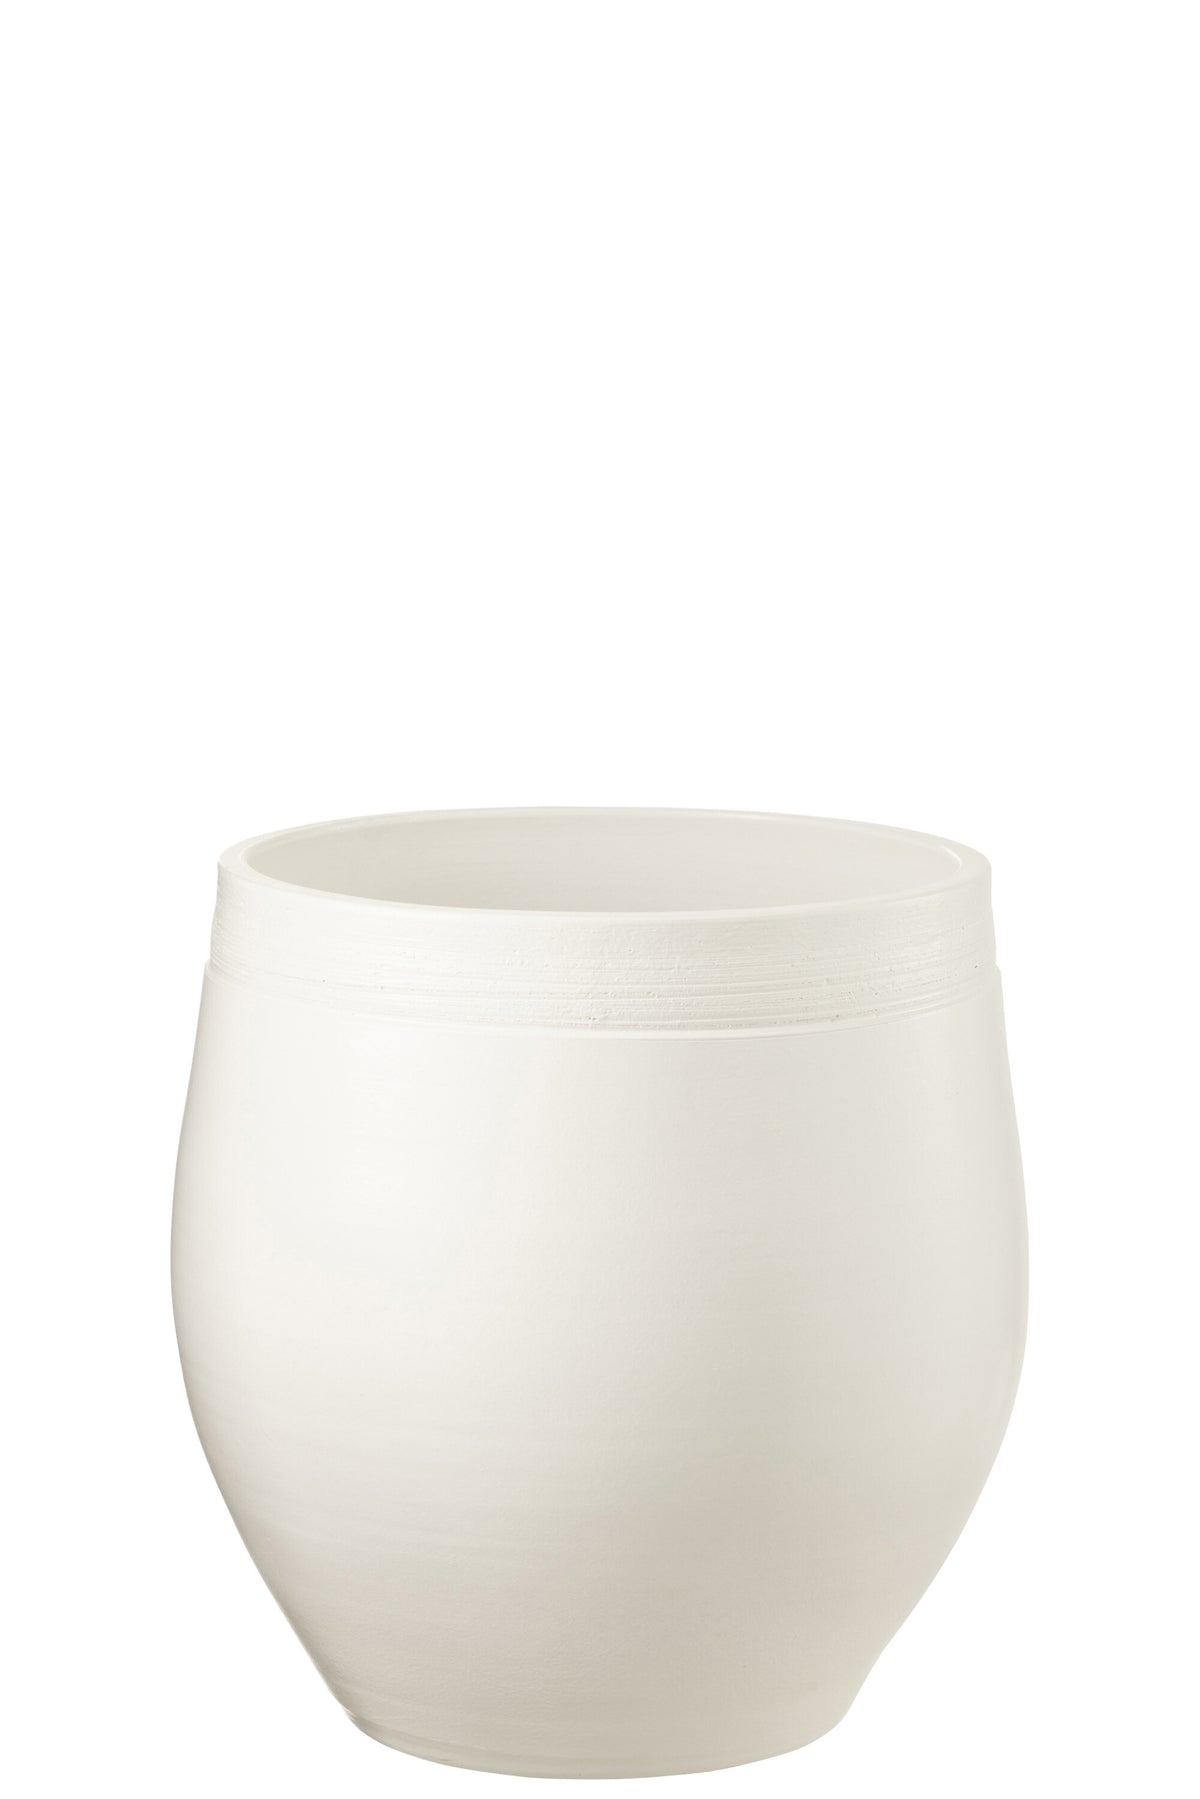 Flower Pot Gio White Xl - (34056)